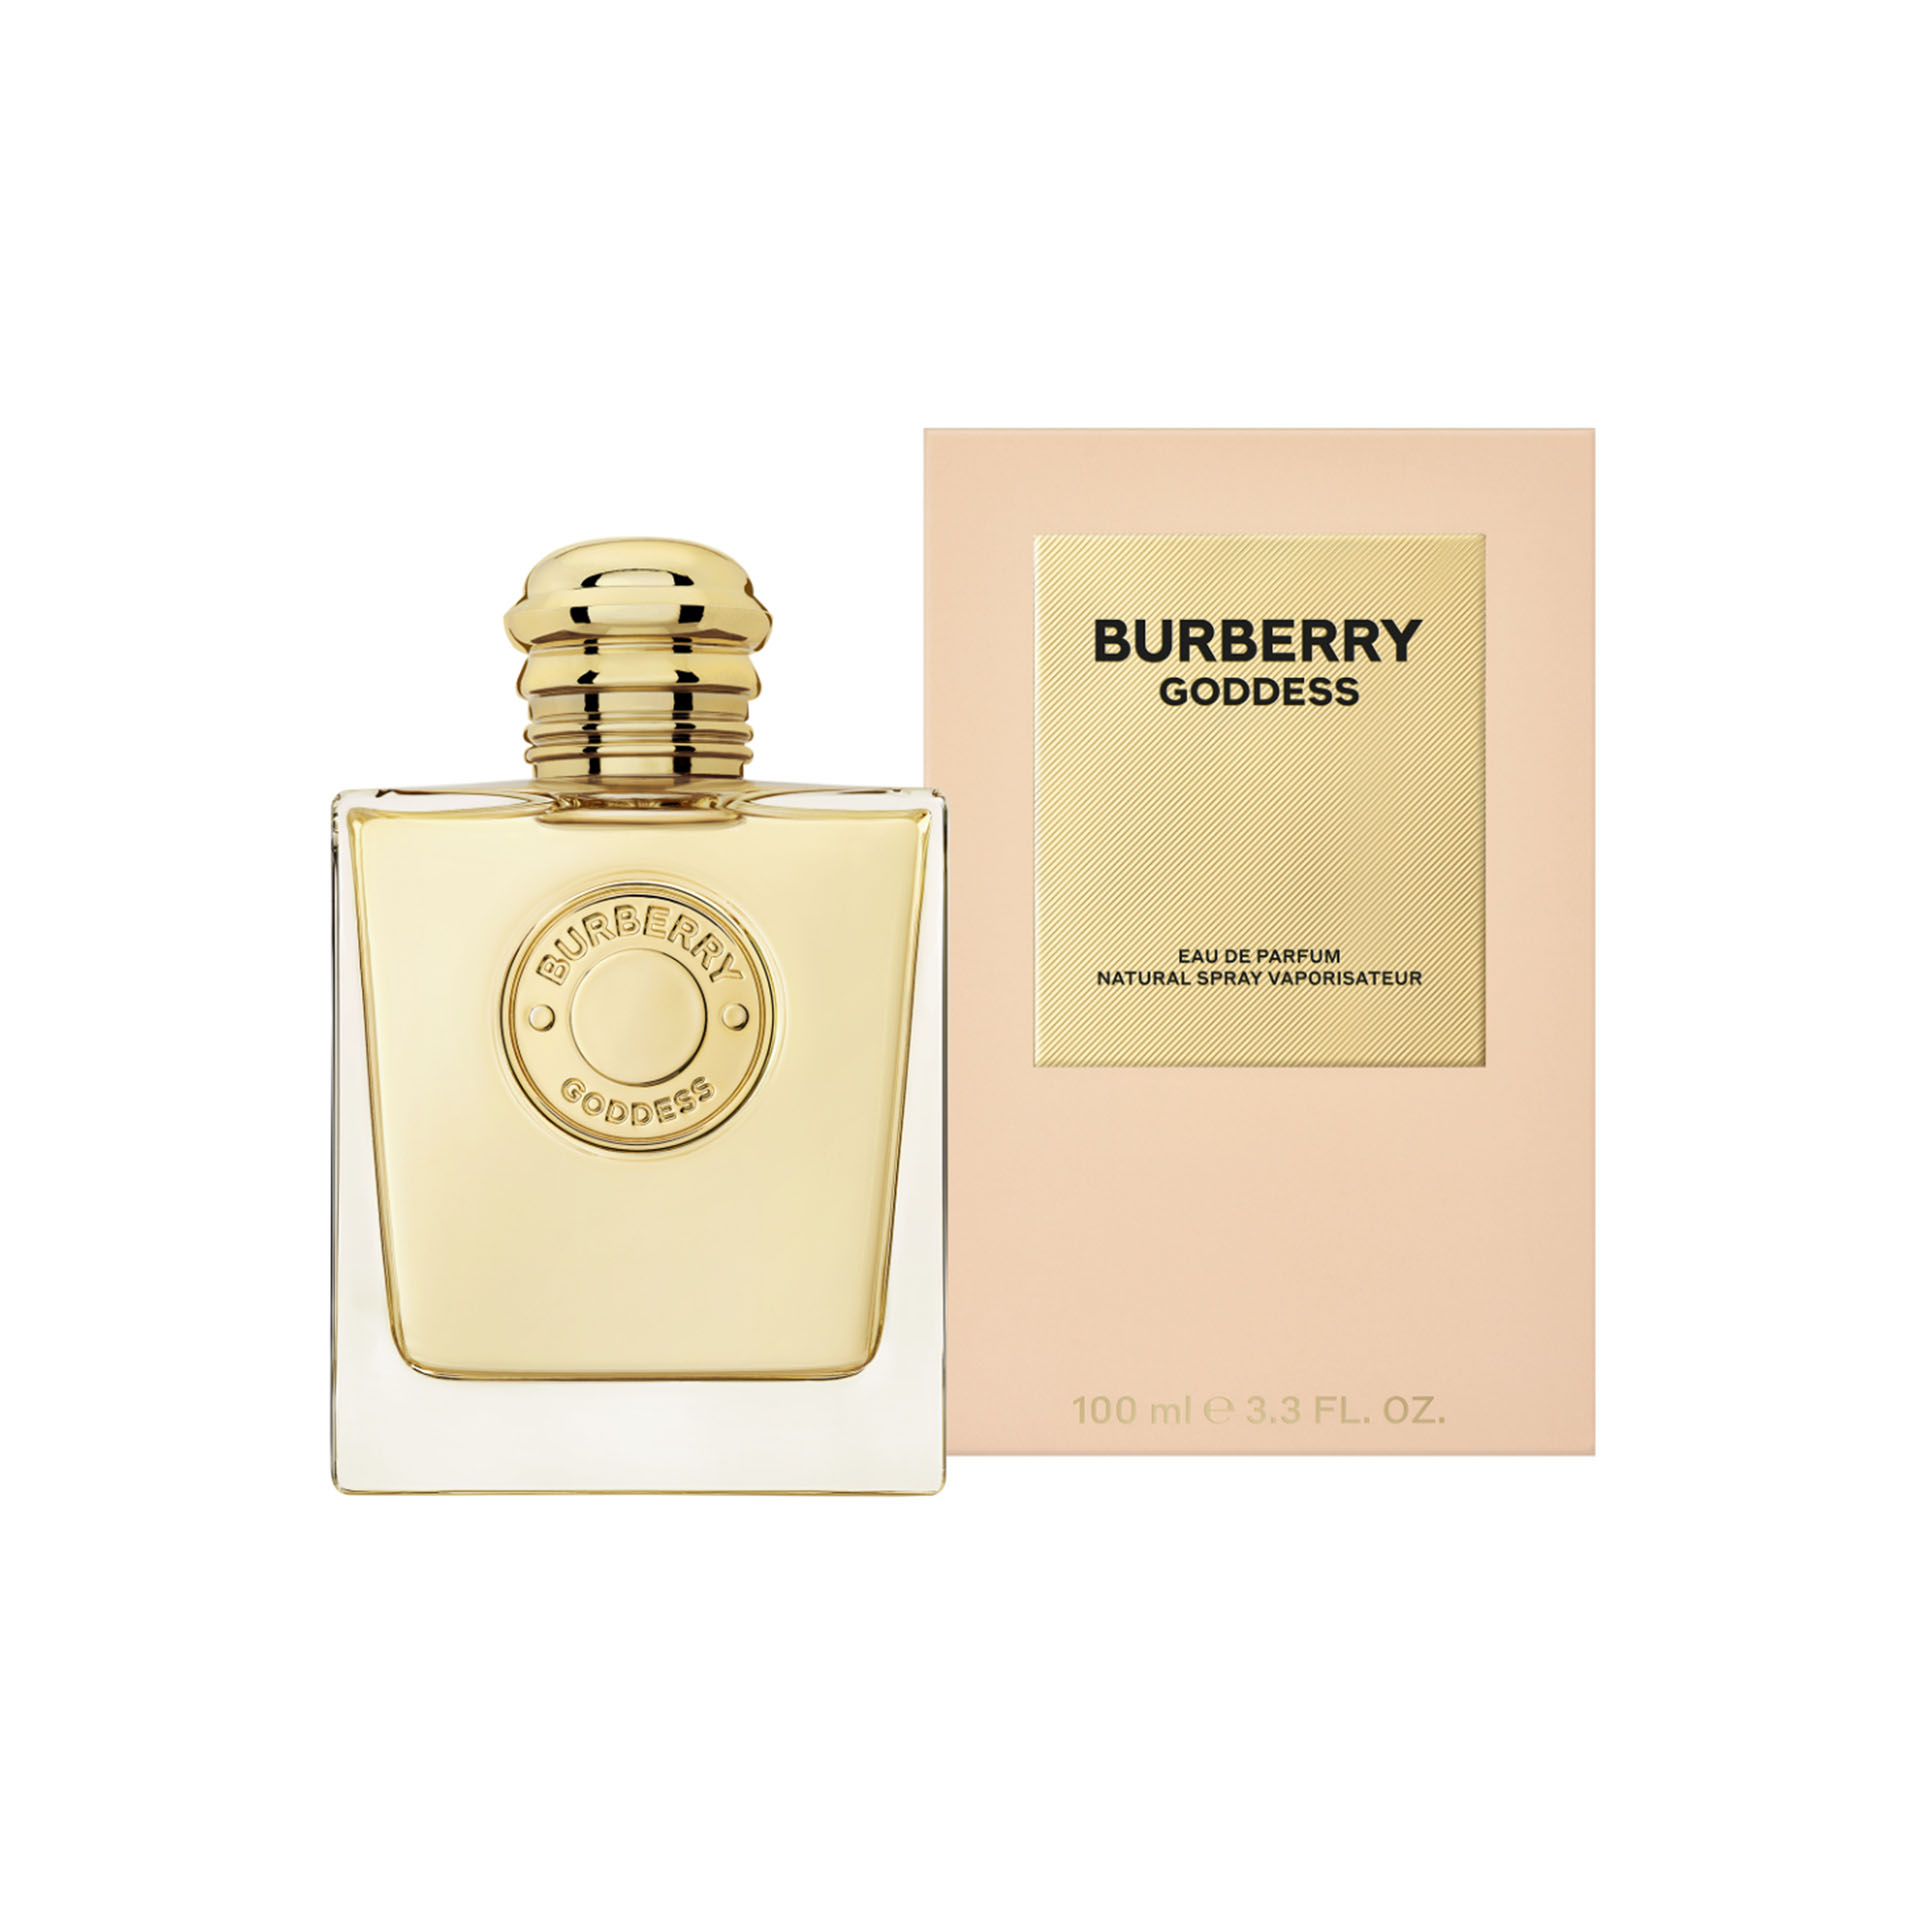 BURBERRY Goddess Eau de Parfum for Women (100ml)